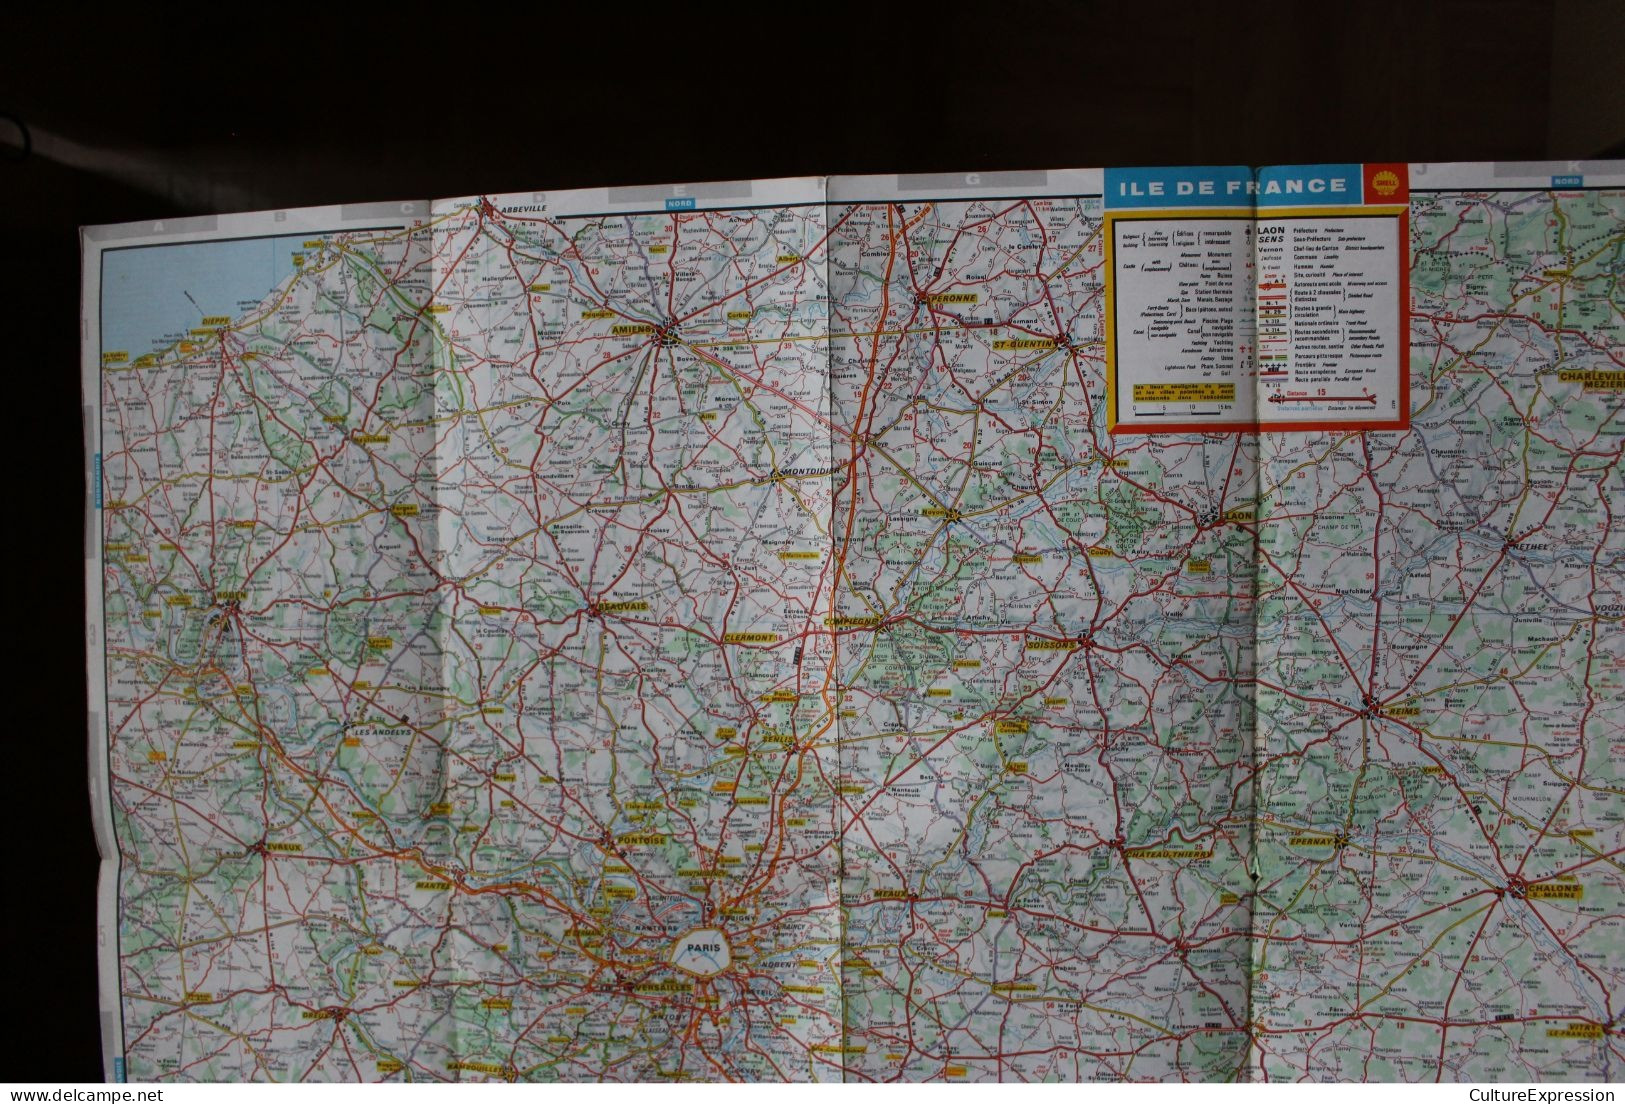 Cartoguide Shell Berre-France N° 4 Île De France 1970 - Maps/Atlas